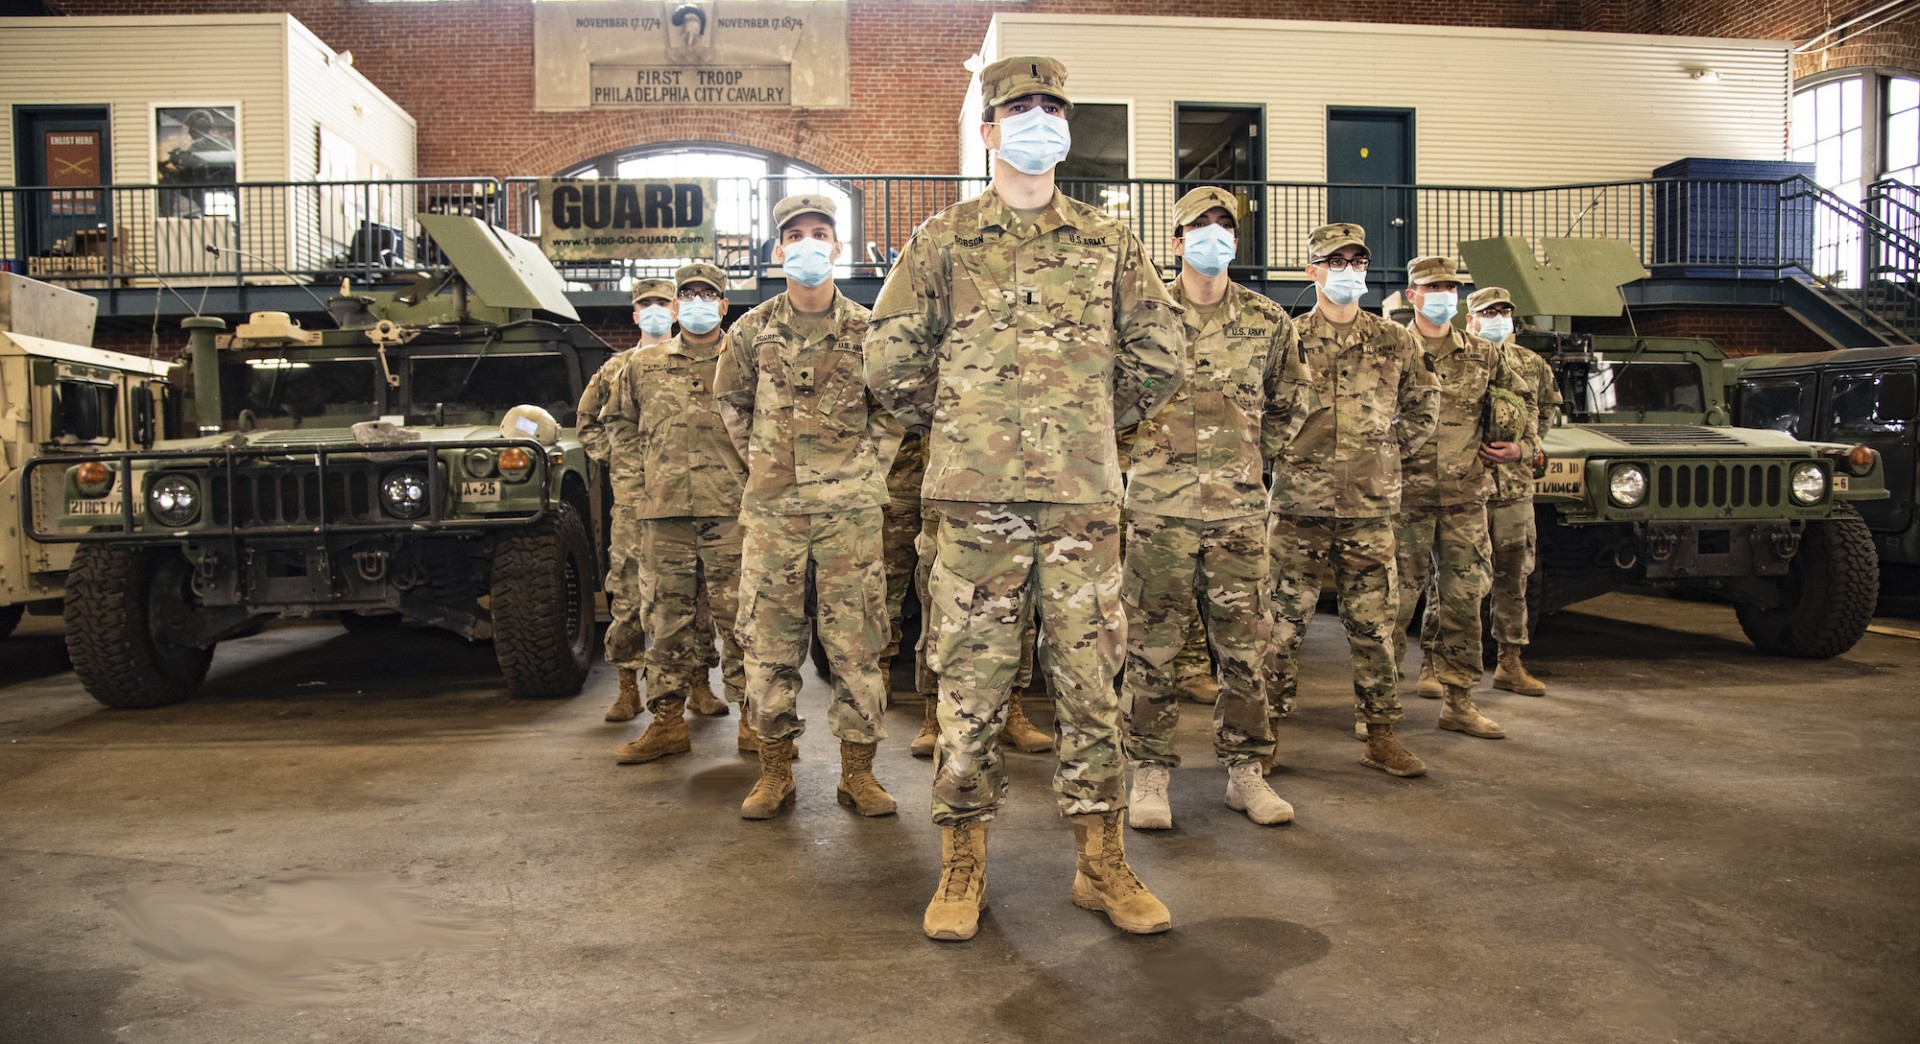 Żołnierze Gwardii Narodowej wykonujący zadanie związane ze zwalczaniem pandemii koronawirusa (zdjęcie ilustracyjne). Fot. Master Sgt. George Roach/US Air National Guard